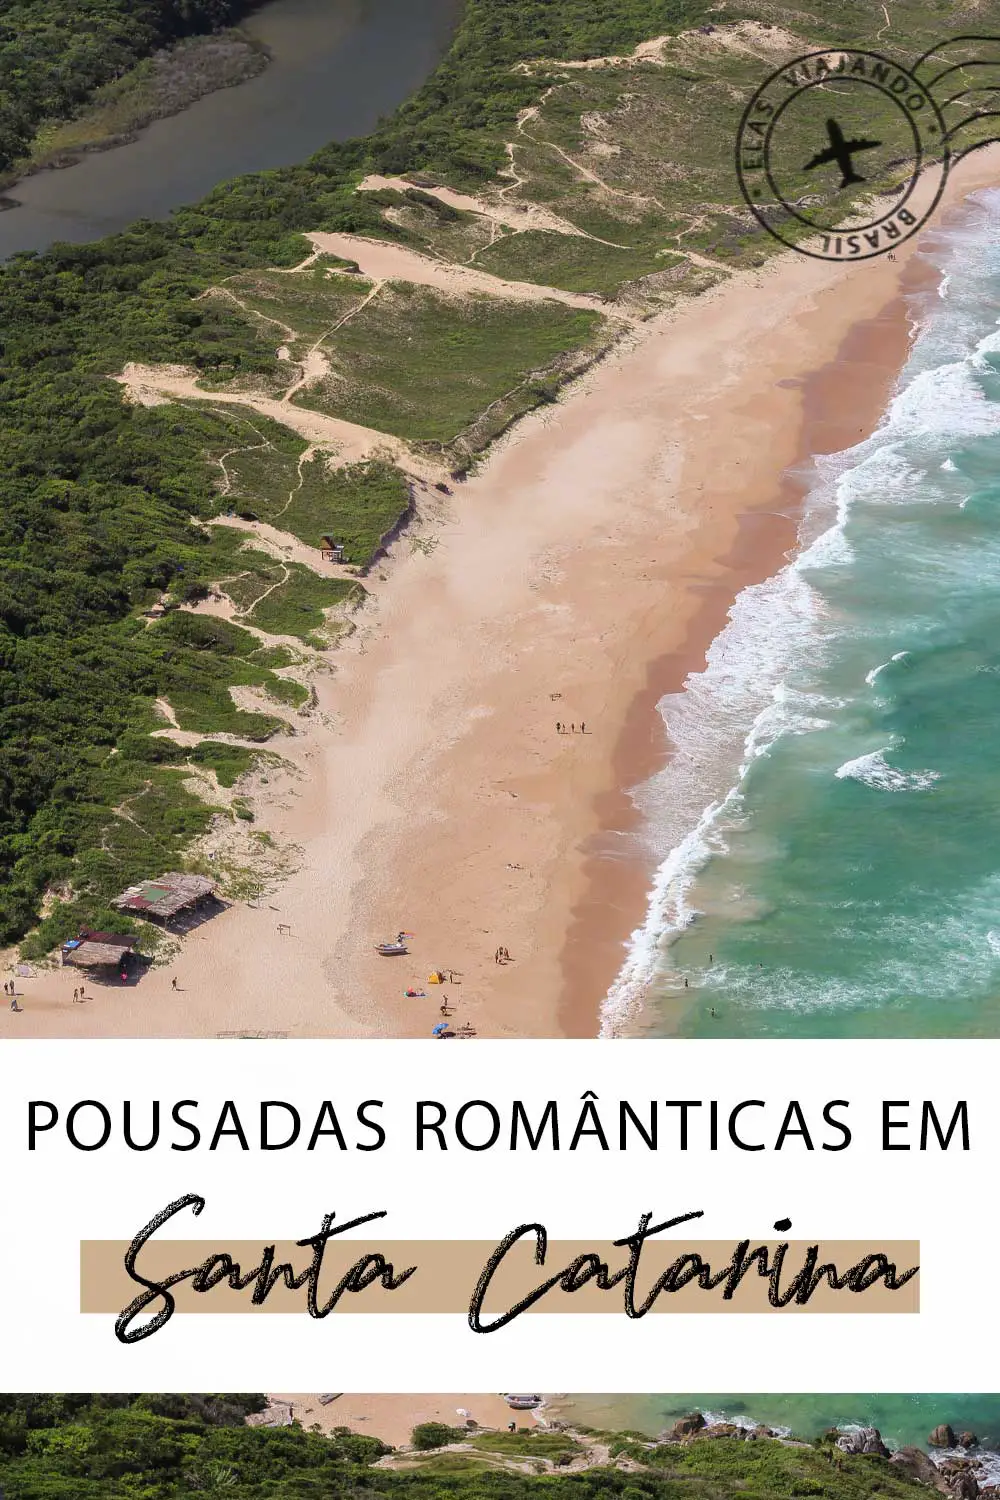 Pousadas românticas em Santa Catarina